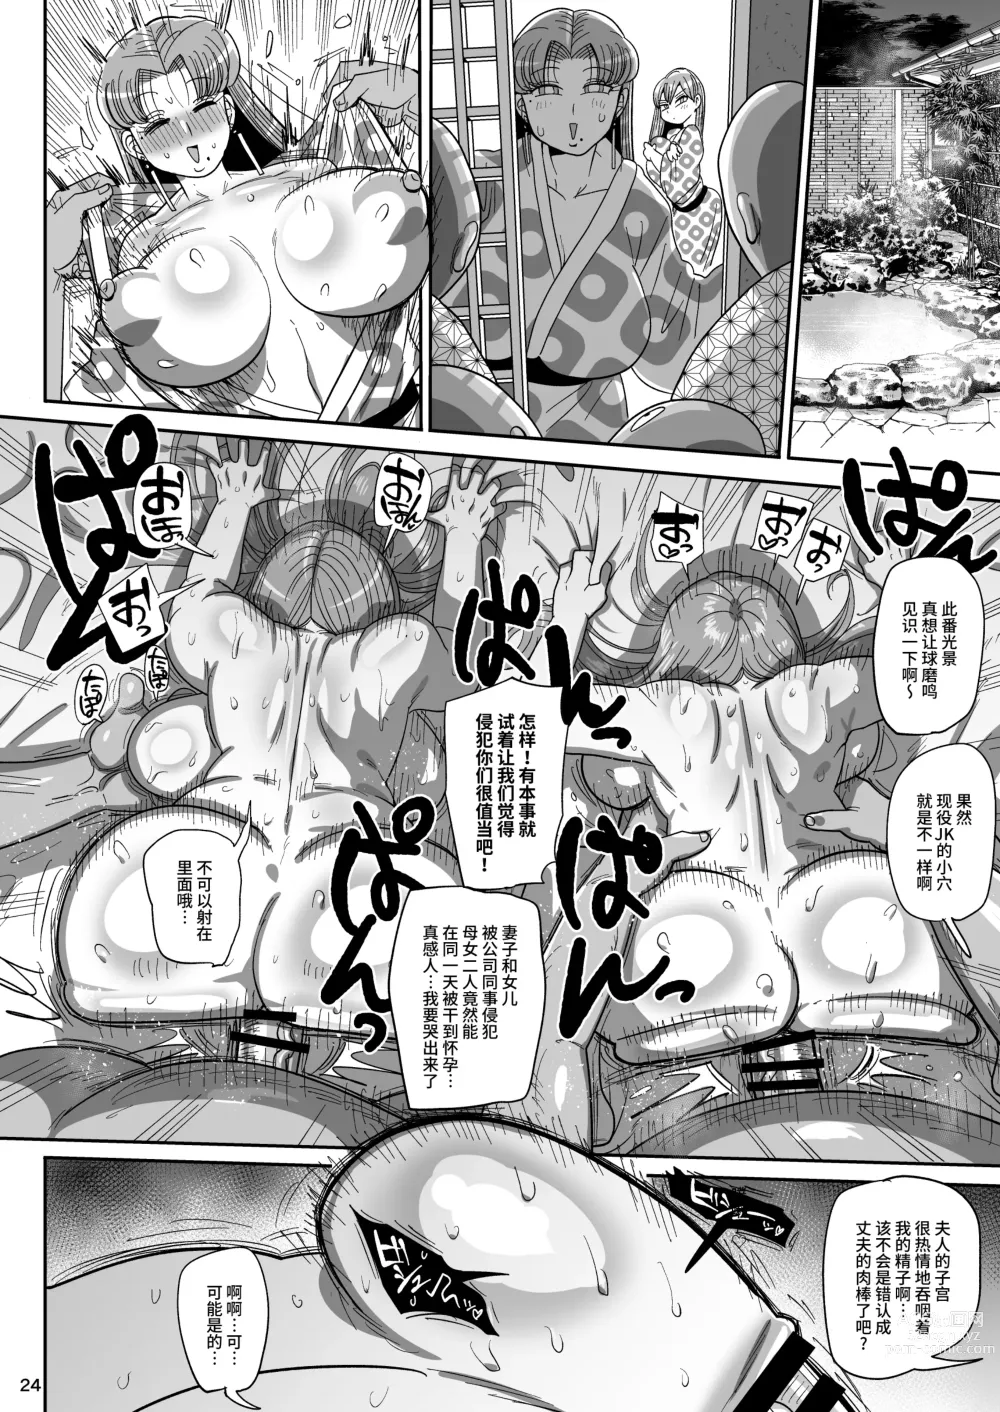 Page 23 of doujinshi Nandemo Chousa Mama Kuma Shizue ha TEIKO ga dekinai